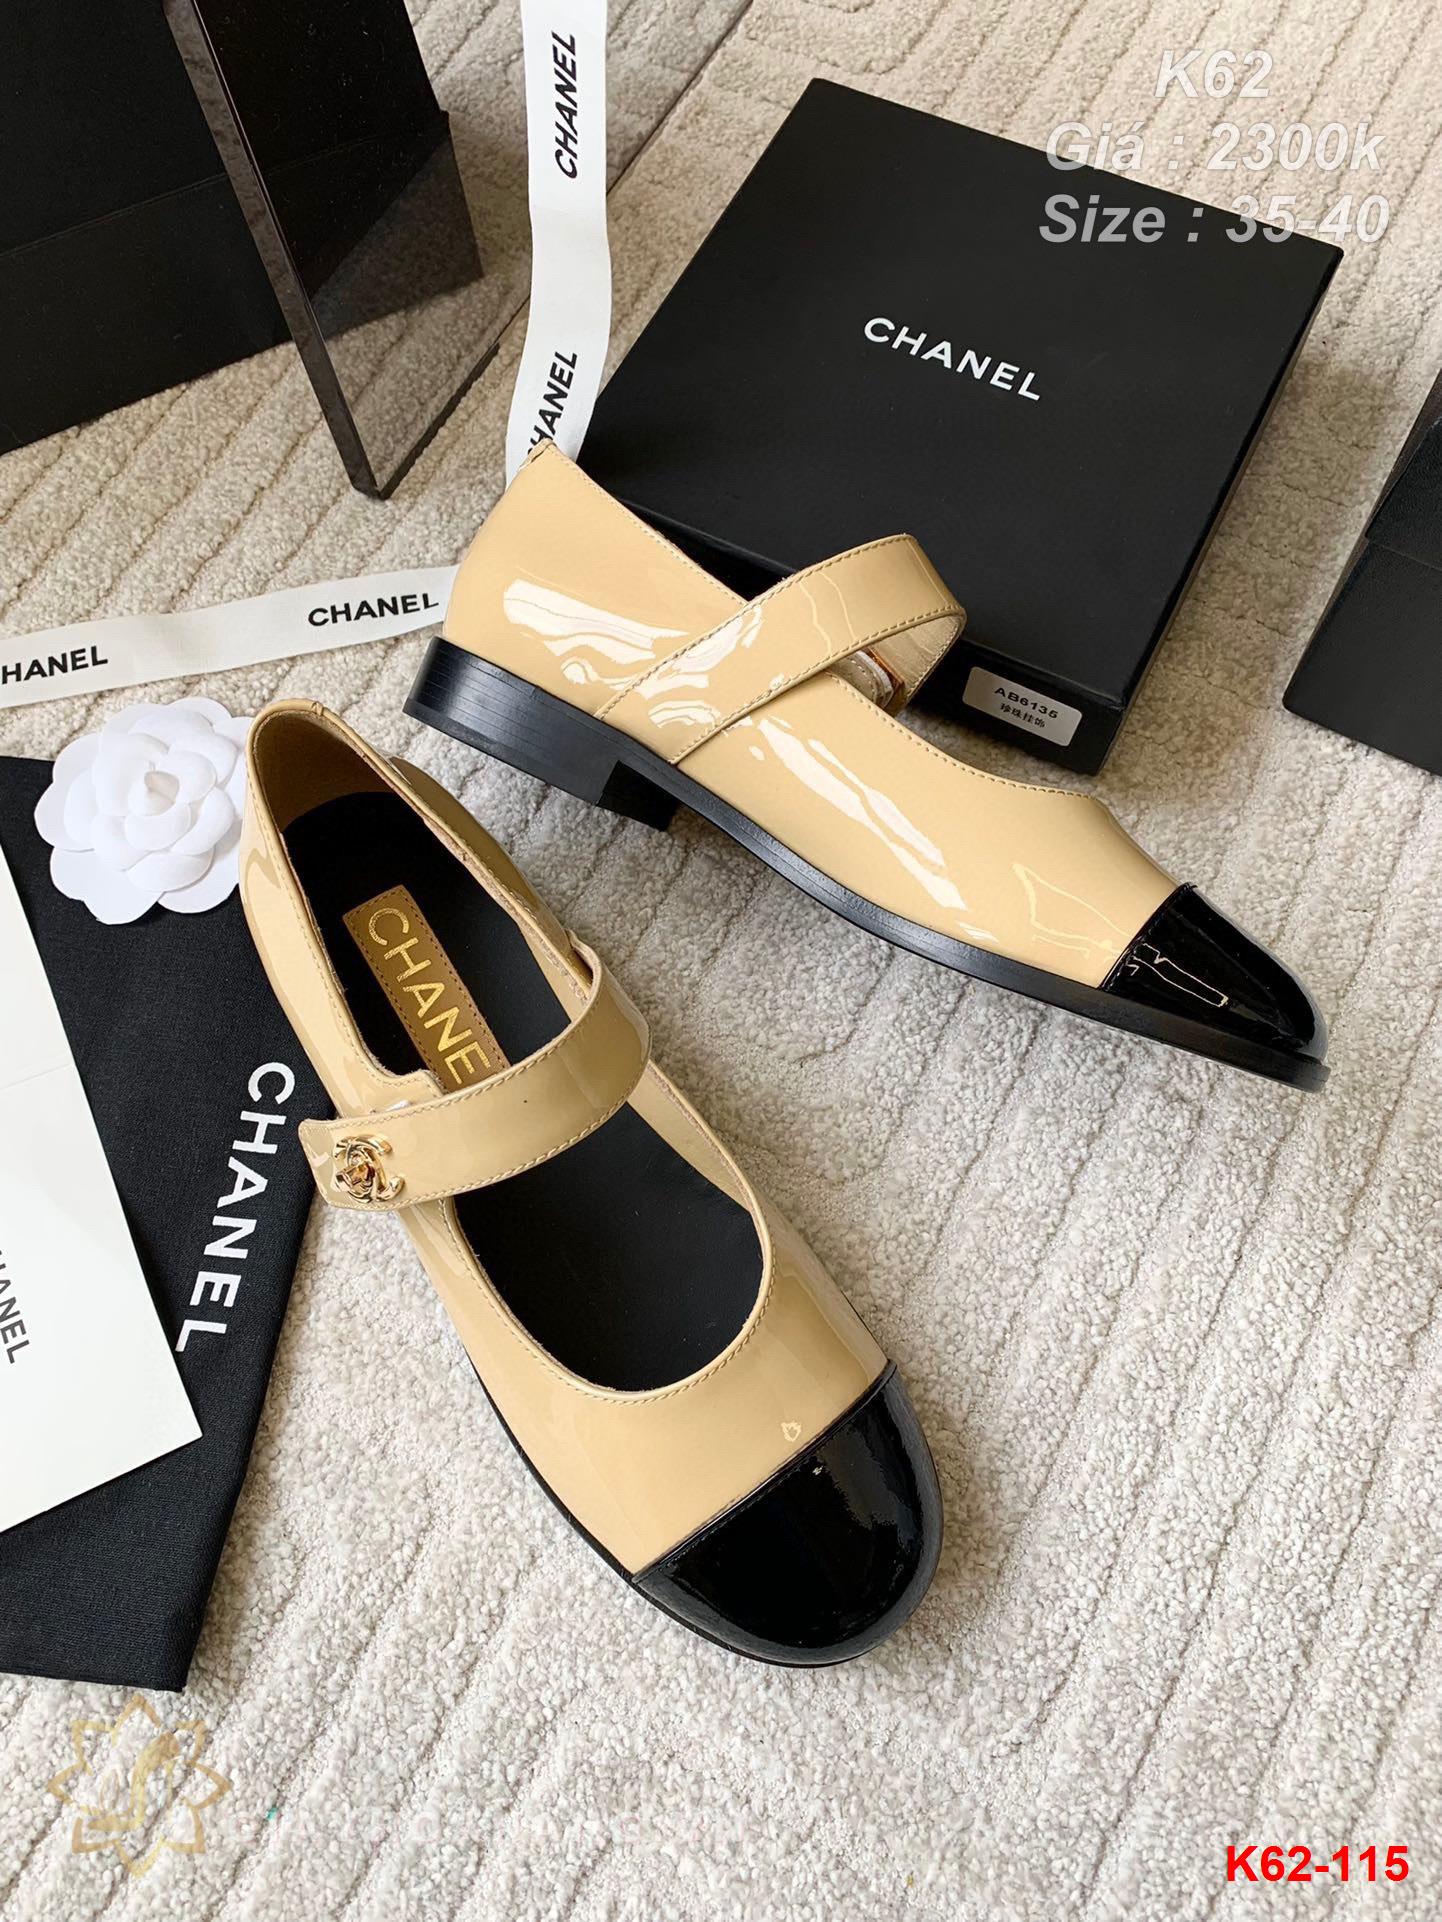 K62-115 Chanel giày bệt siêu cấp